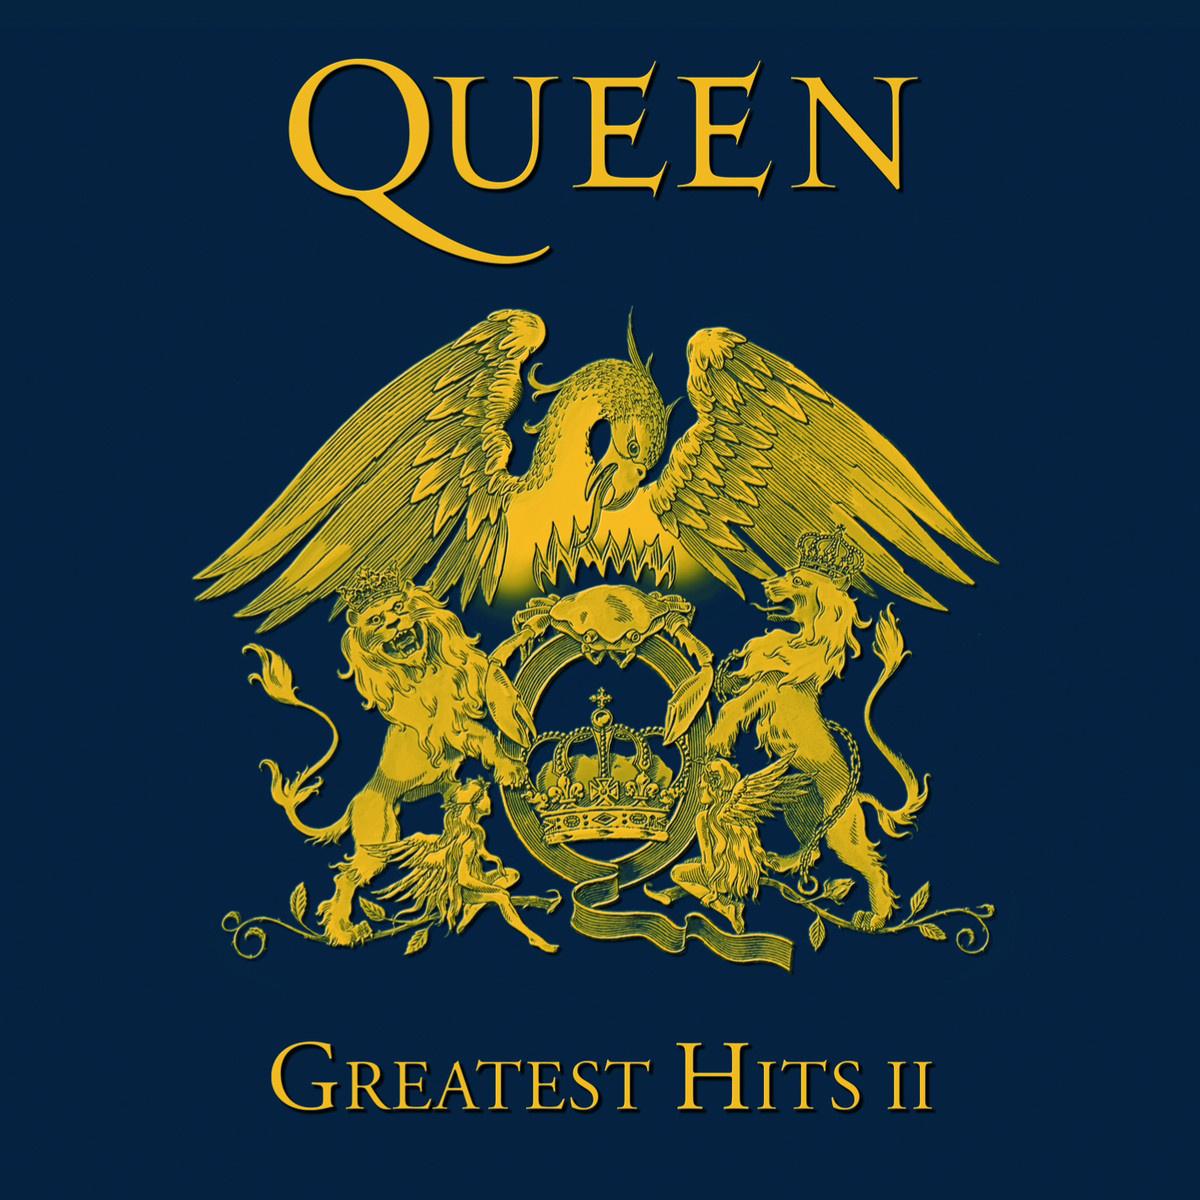 Greatest Hits II专辑15首歌曲_Queen新专辑Greatest Hits II_Queen最新专辑_沪江外文歌曲